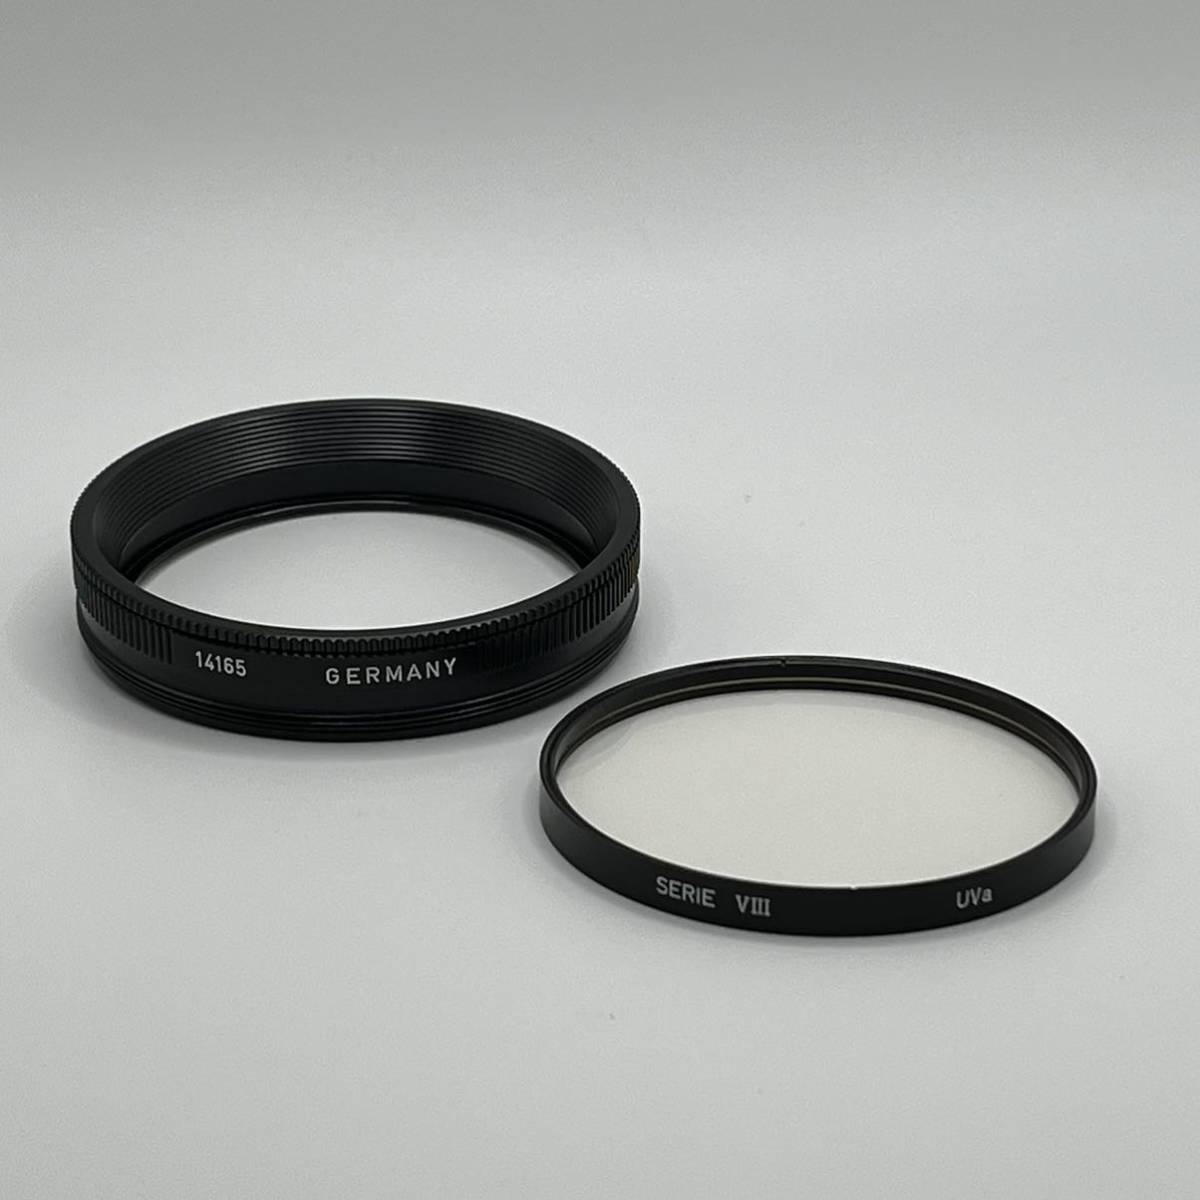 再入荷！】 Leica 14165 Ⅷ FILTER RING & SERIE Ⅷ UVa FILTER ライカ